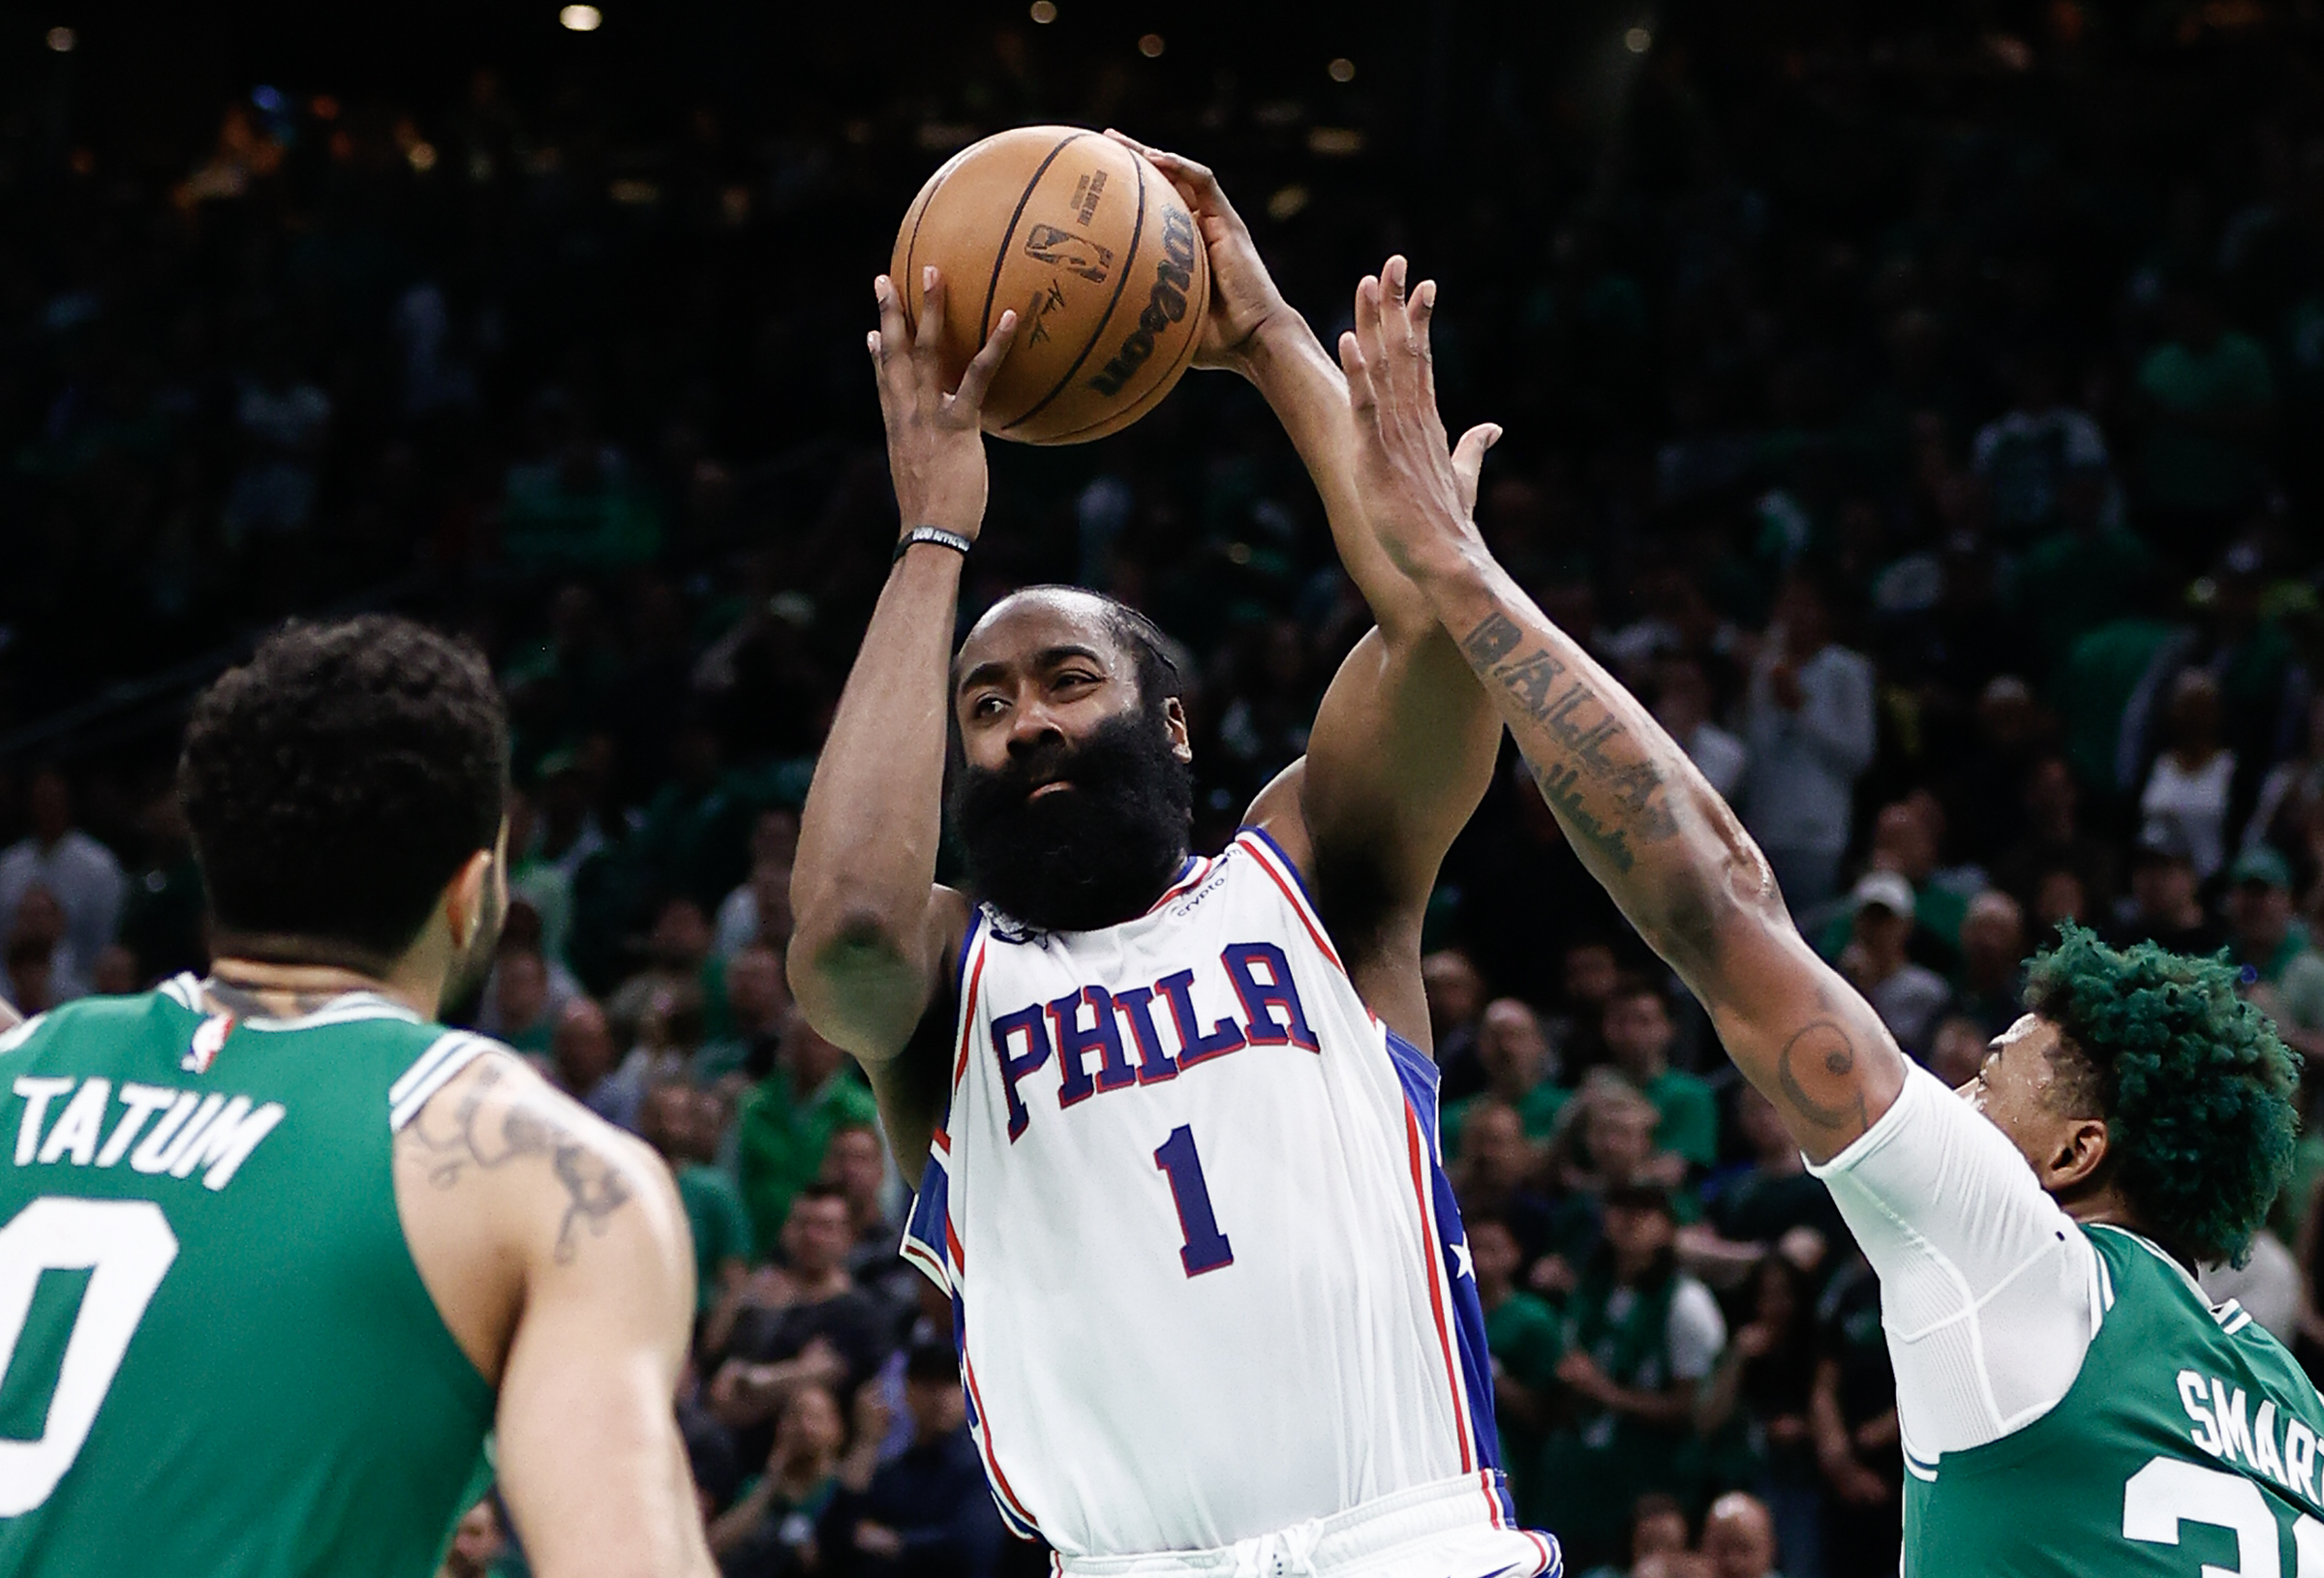 Philadelphia 76ers' James Harden brings new era of energy in home